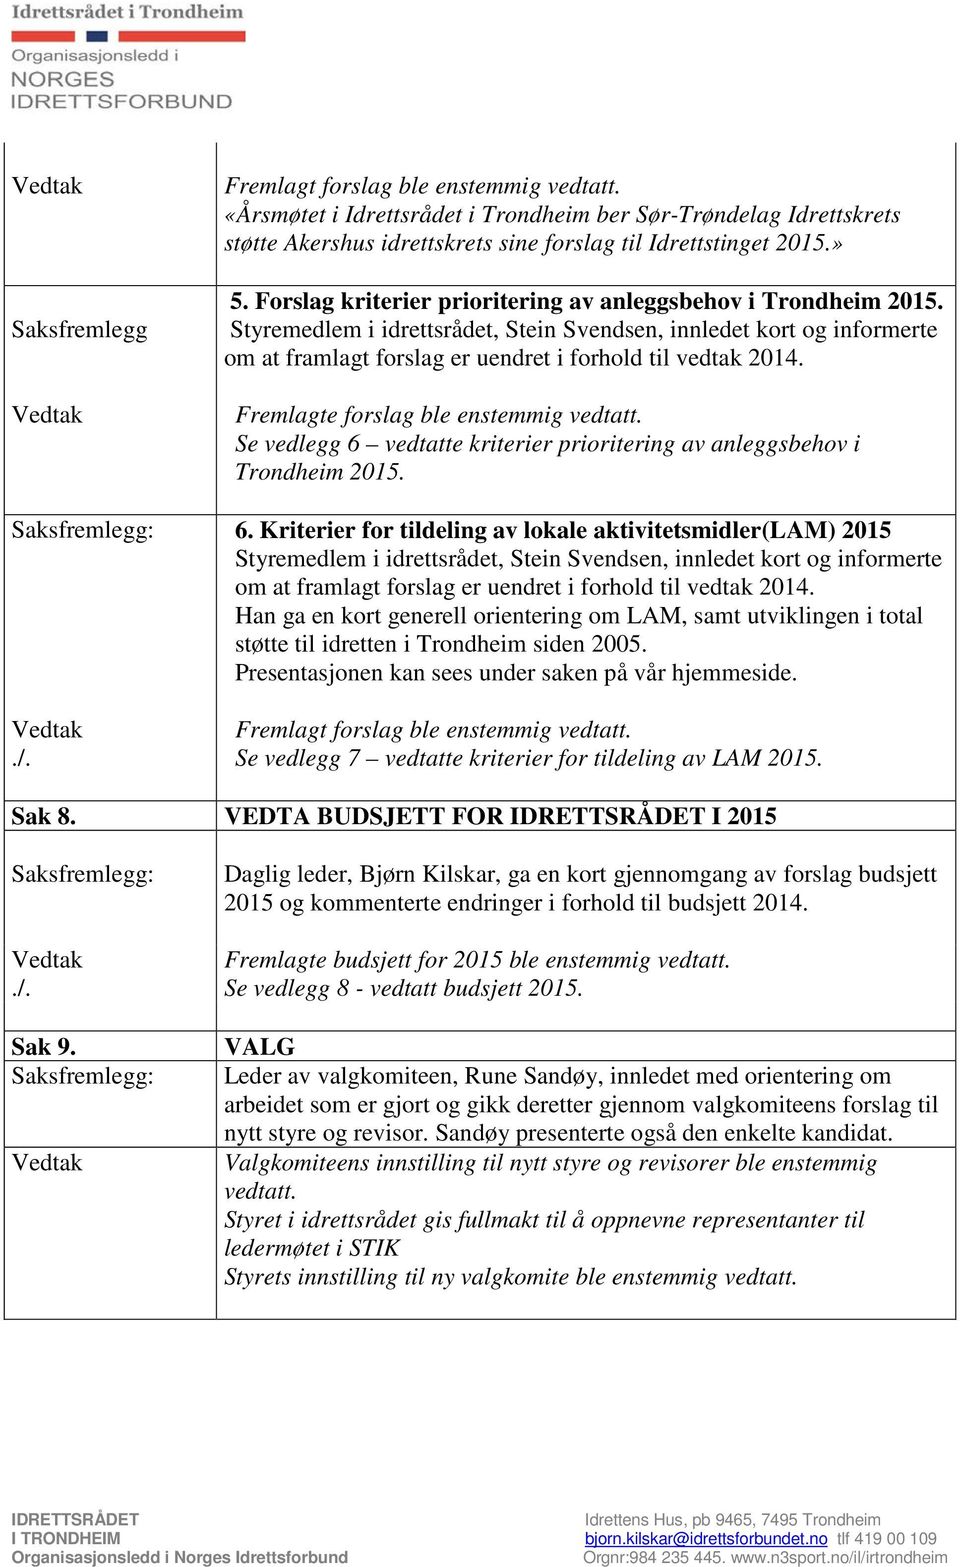 Forslag kriterier prioritering av anleggsbehov i Trondheim 2015. Styremedlem i idrettsrådet, Stein Svendsen, innledet kort og informerte om at framlagt forslag er uendret i forhold til vedtak 2014.